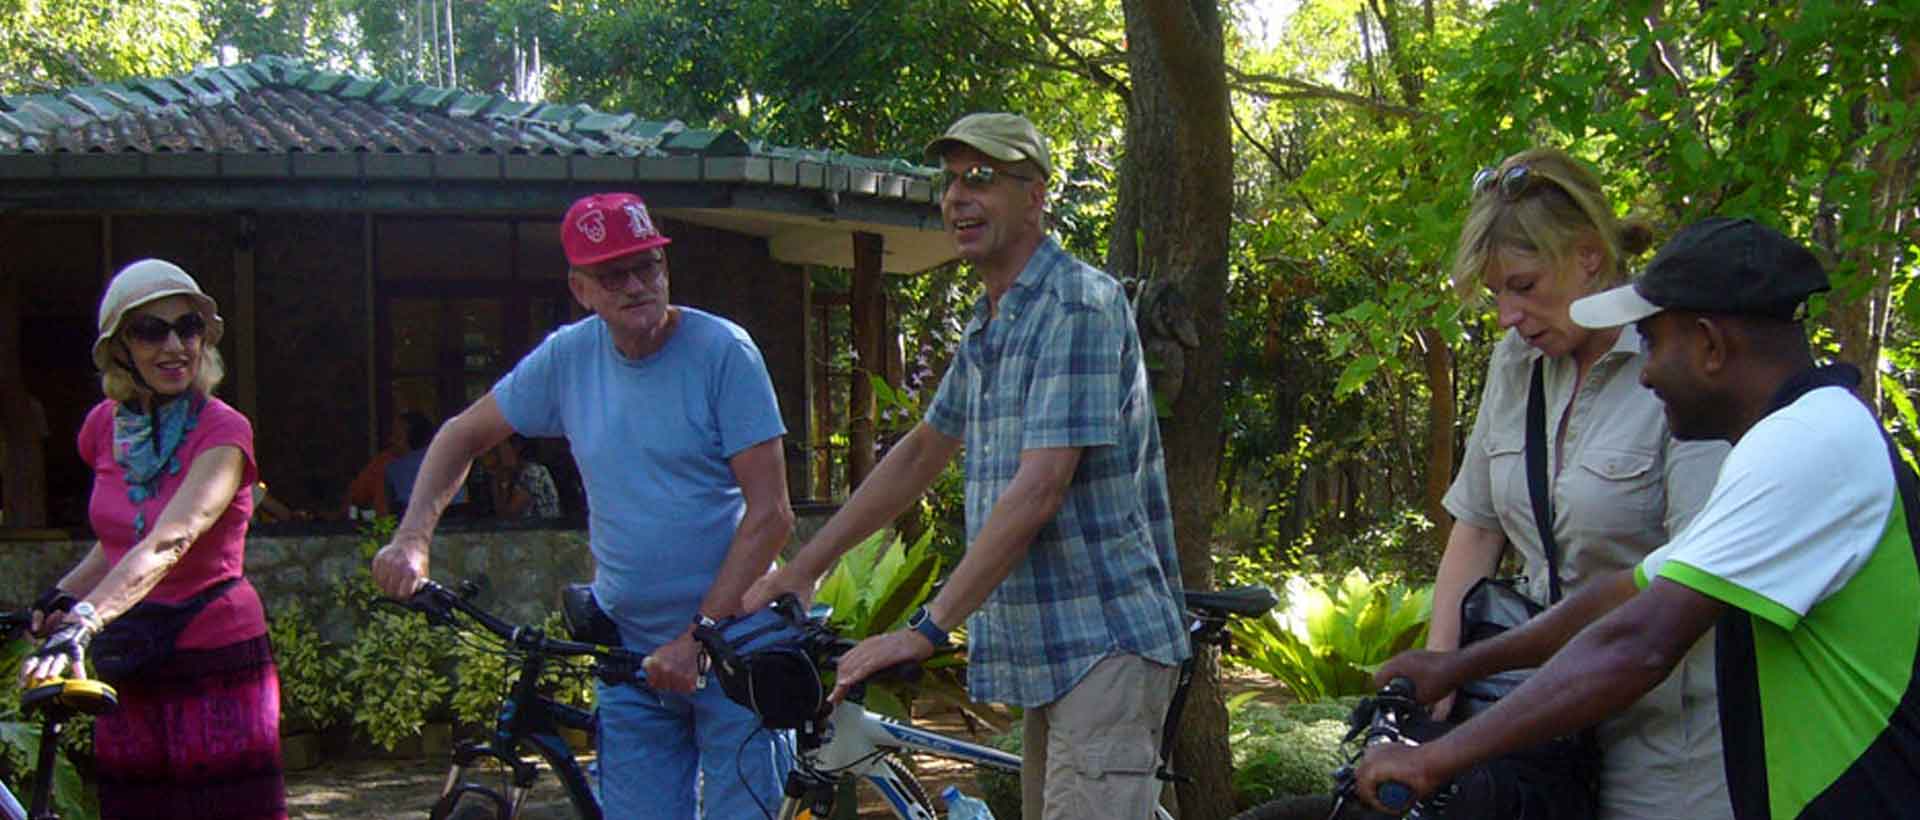 Ceylon Holiday Radtouren für jeden Geschmack und alle Altersgruppen